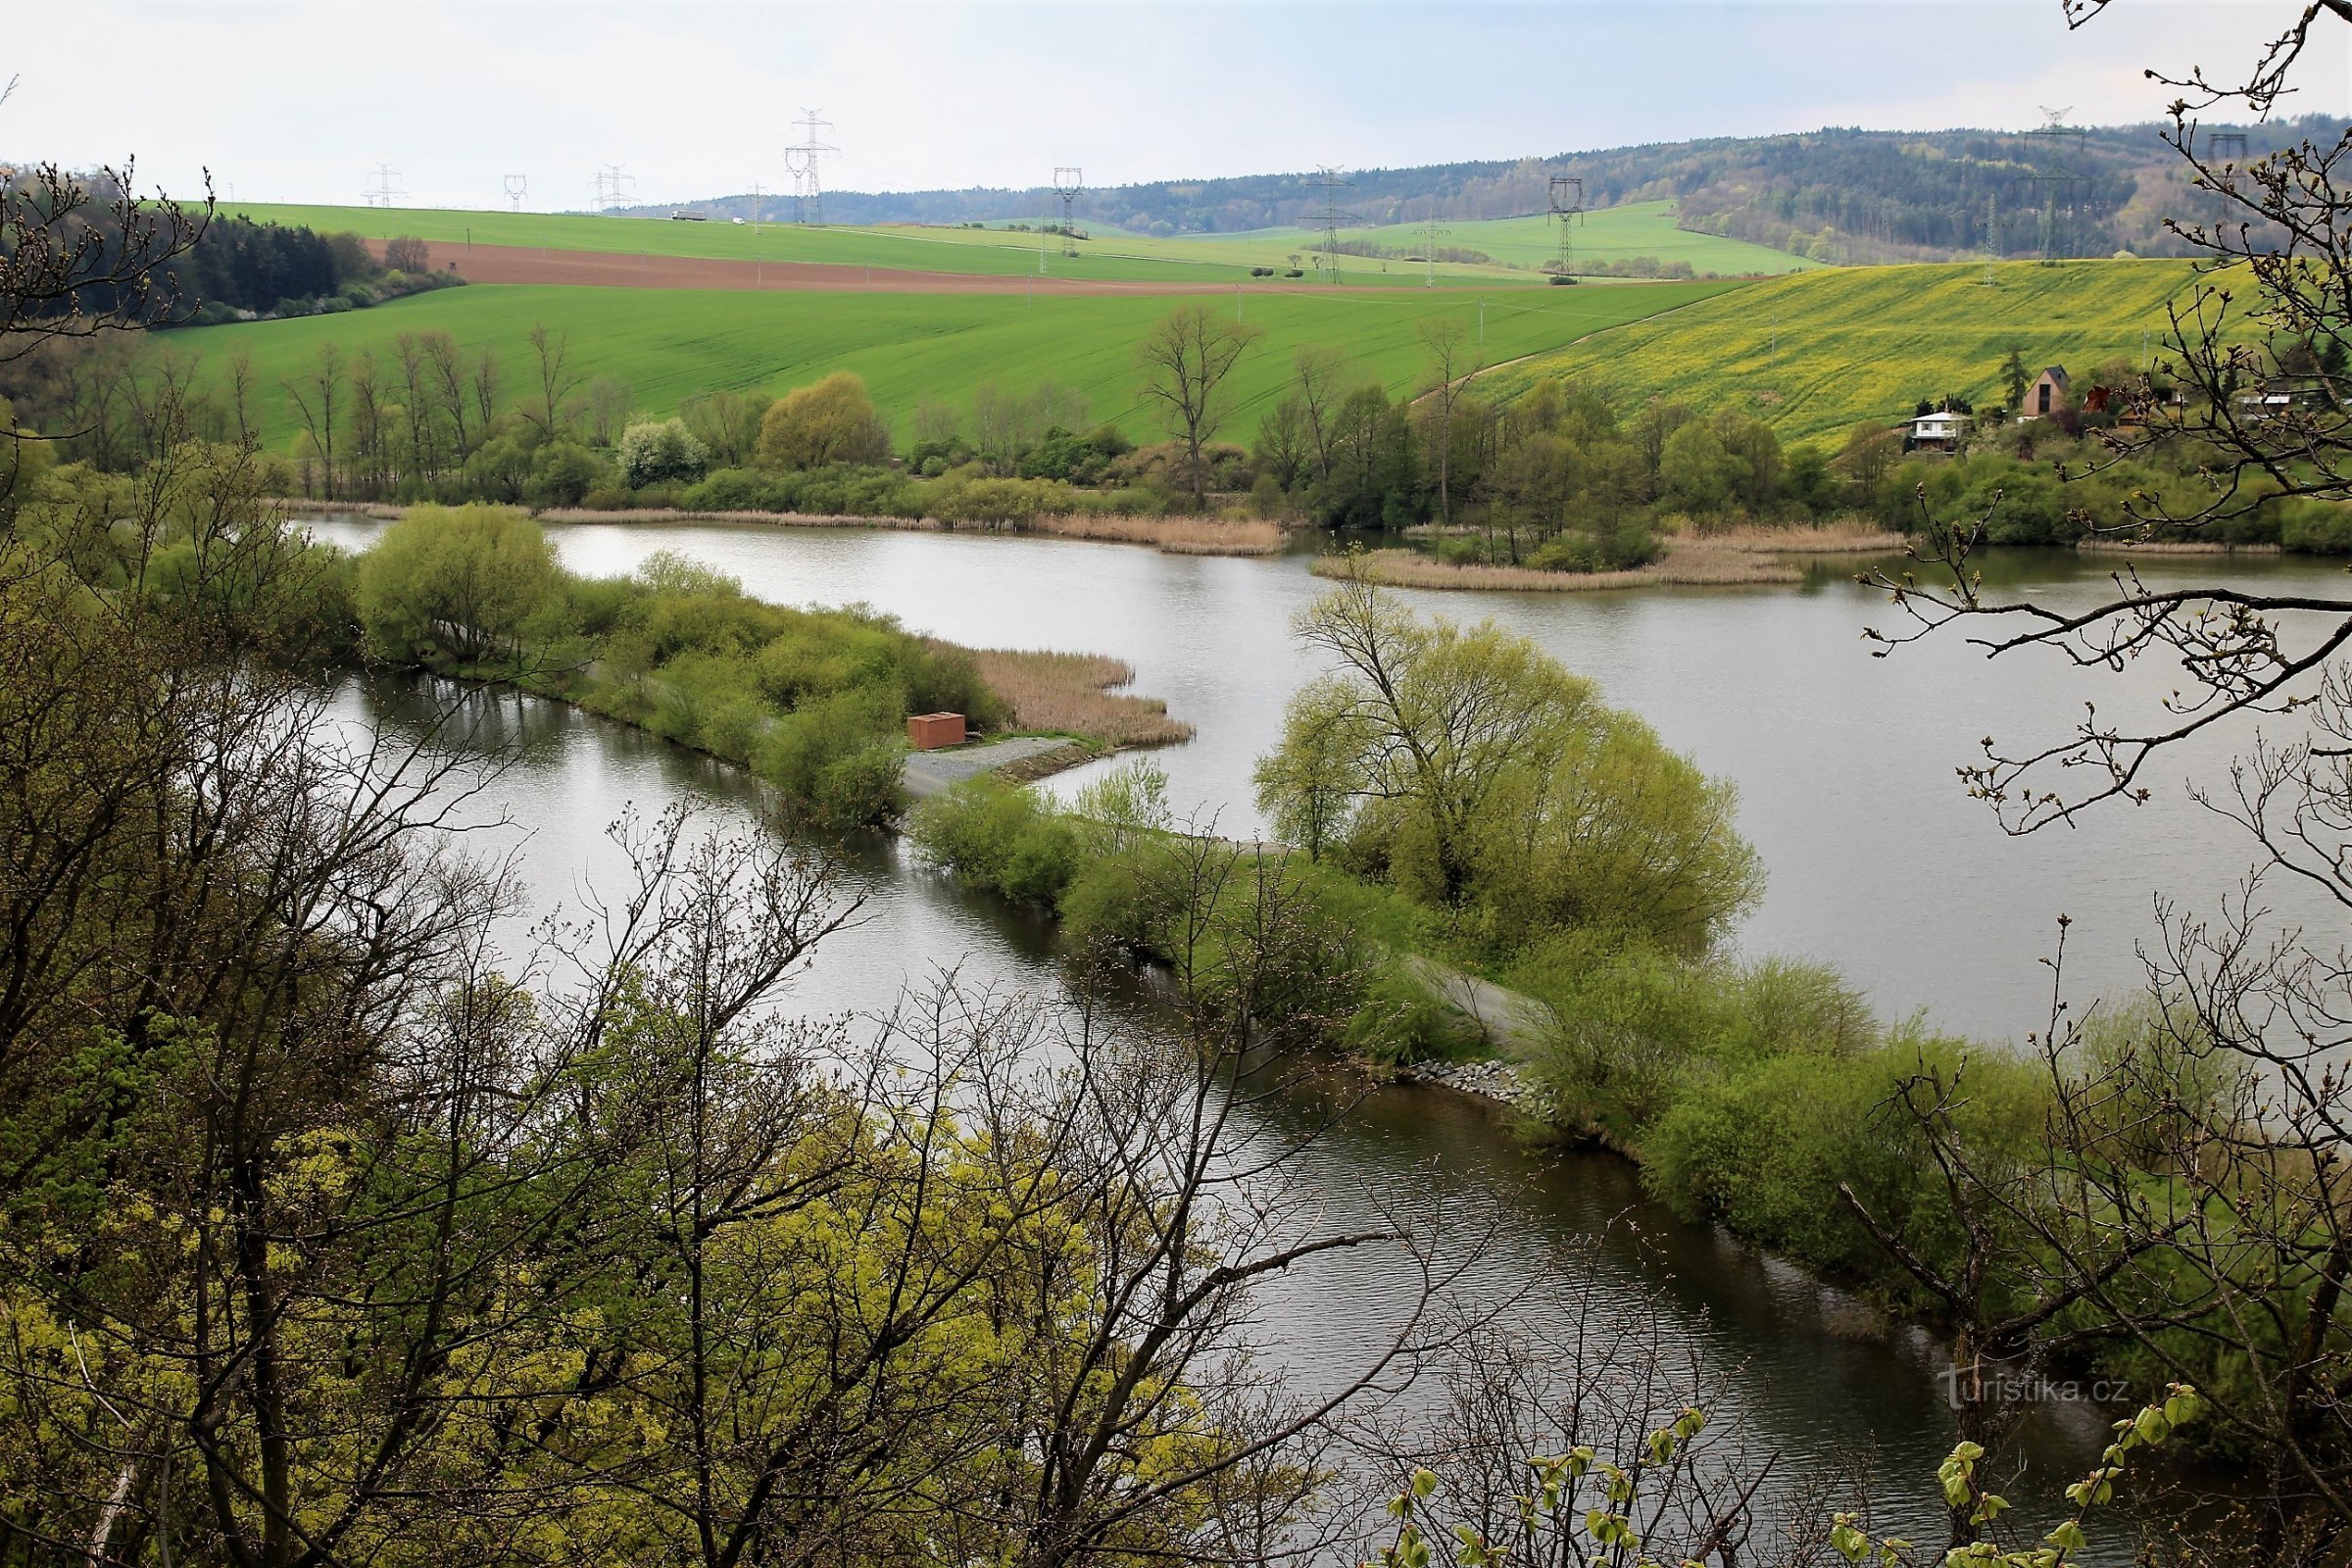 Vista del pantano desde el mirador en el marcador amarillo, en primer plano el final del dique en el río Svratka